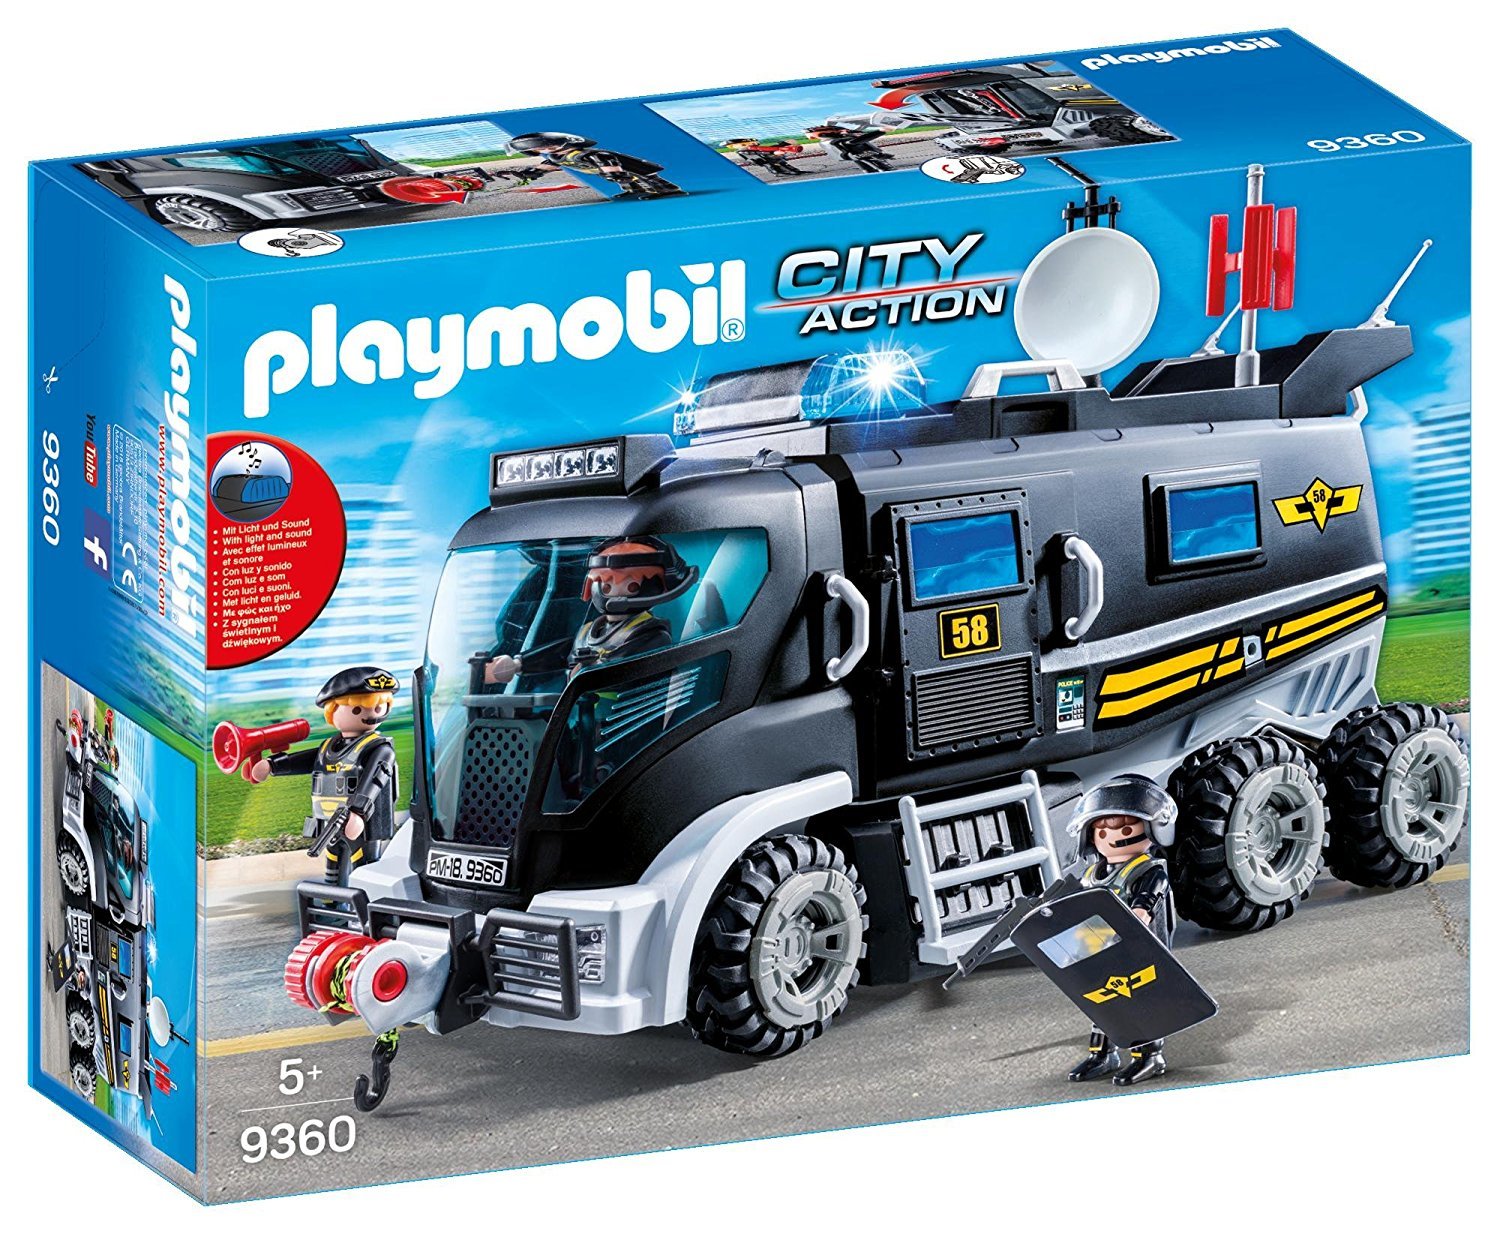 9360 PLAYMOBIL® City Action, Gelbėjimo sunkvežimis su garsais ir šviesomis